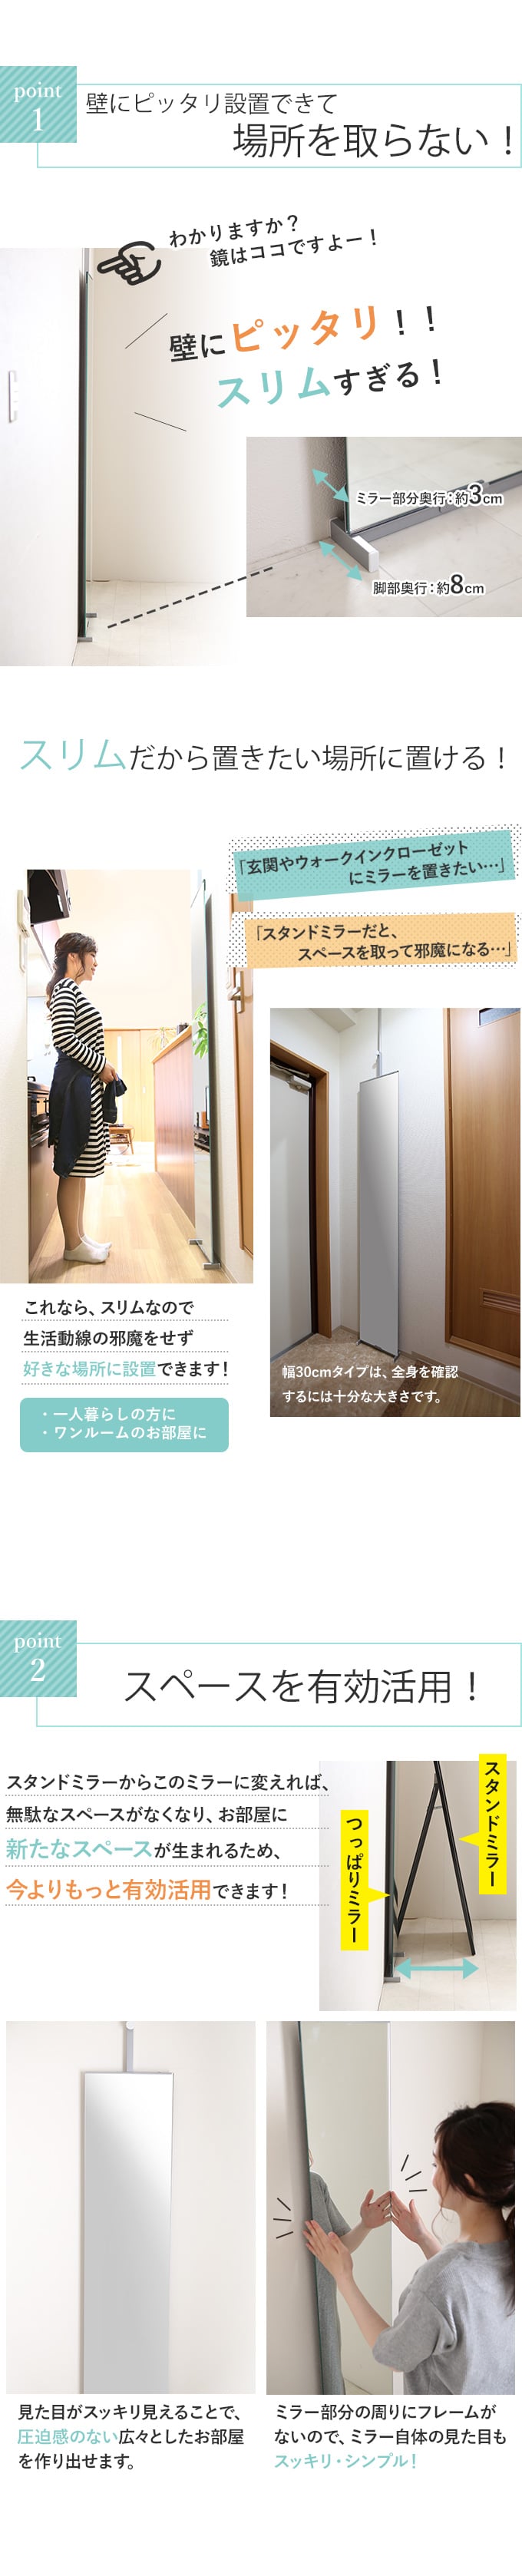 【楽天市場】日本製 突っ張りミラー 幅30cm 全身鏡 ミラー 壁面ミラー つっぱりミラー 鏡 全身ミラー 姿見 全身姿見鏡 スタンドミラー